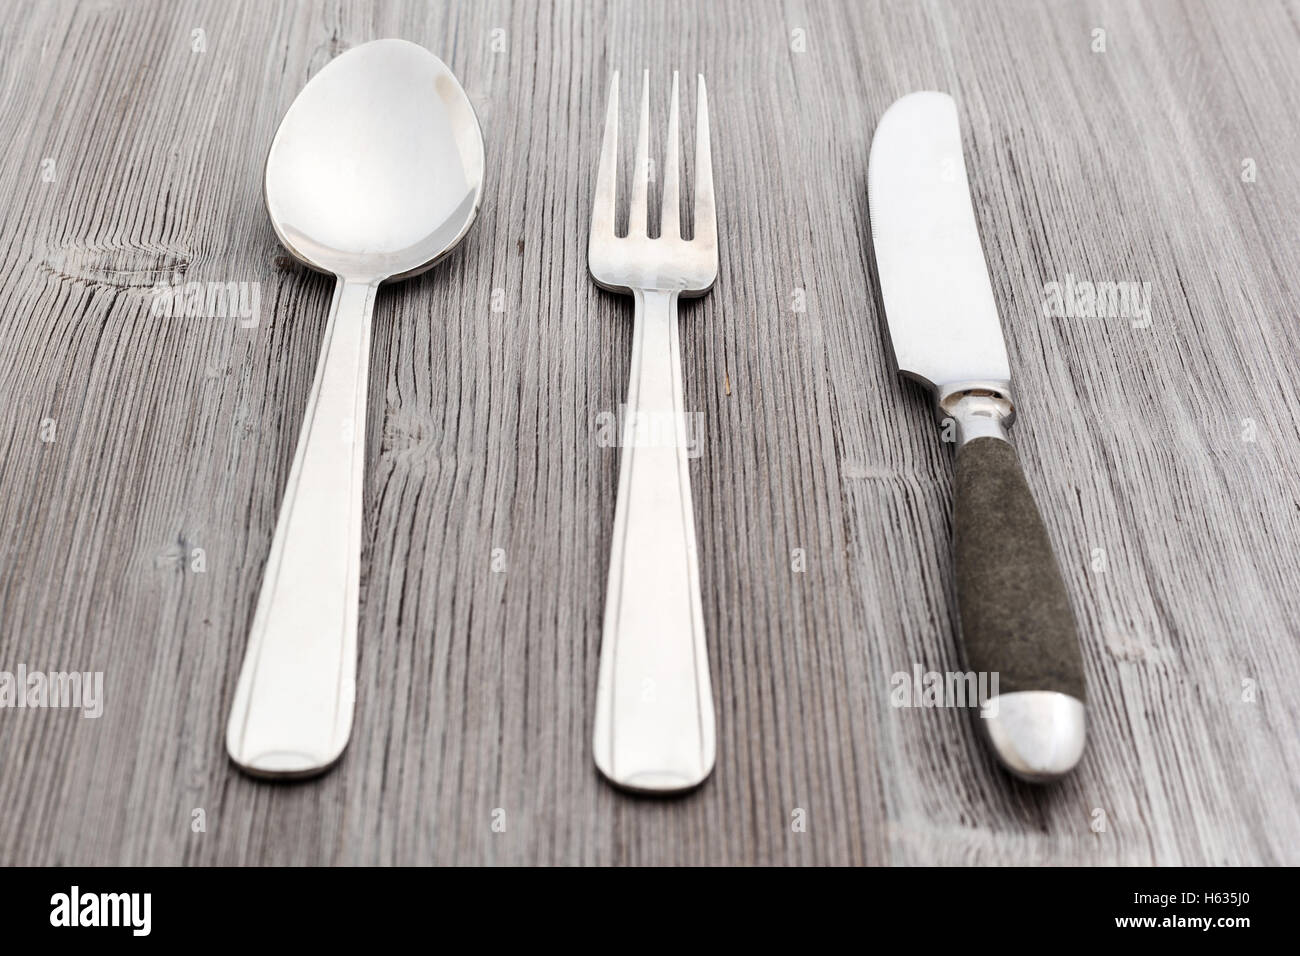 Concetto di cibo - set di posate da tavola coltello, forchetta, cucchiaio per minestra sul marrone chiaro pannello di legno Foto Stock